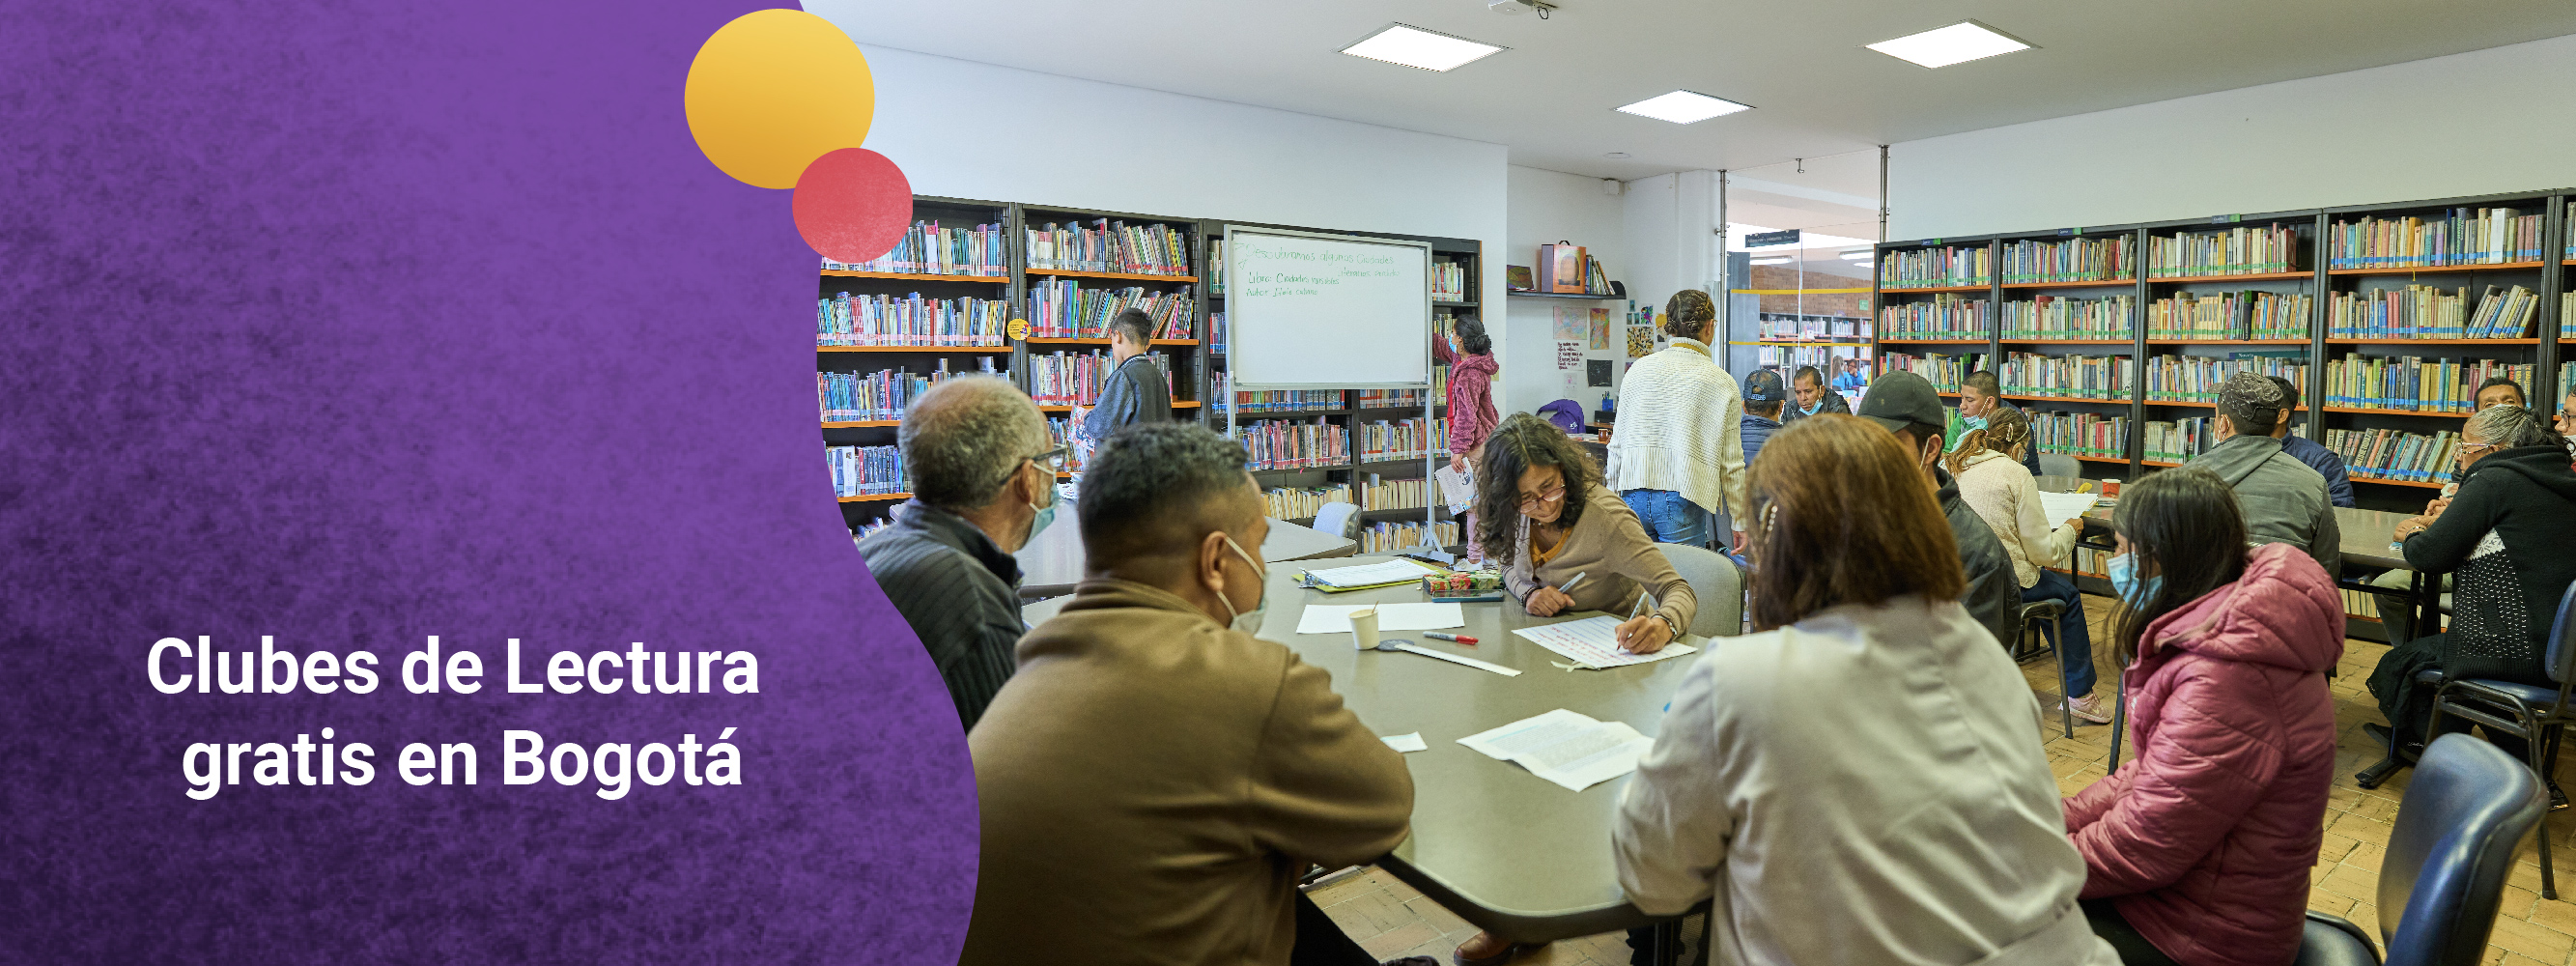 Clubes de Lectura gratis en Bogotá